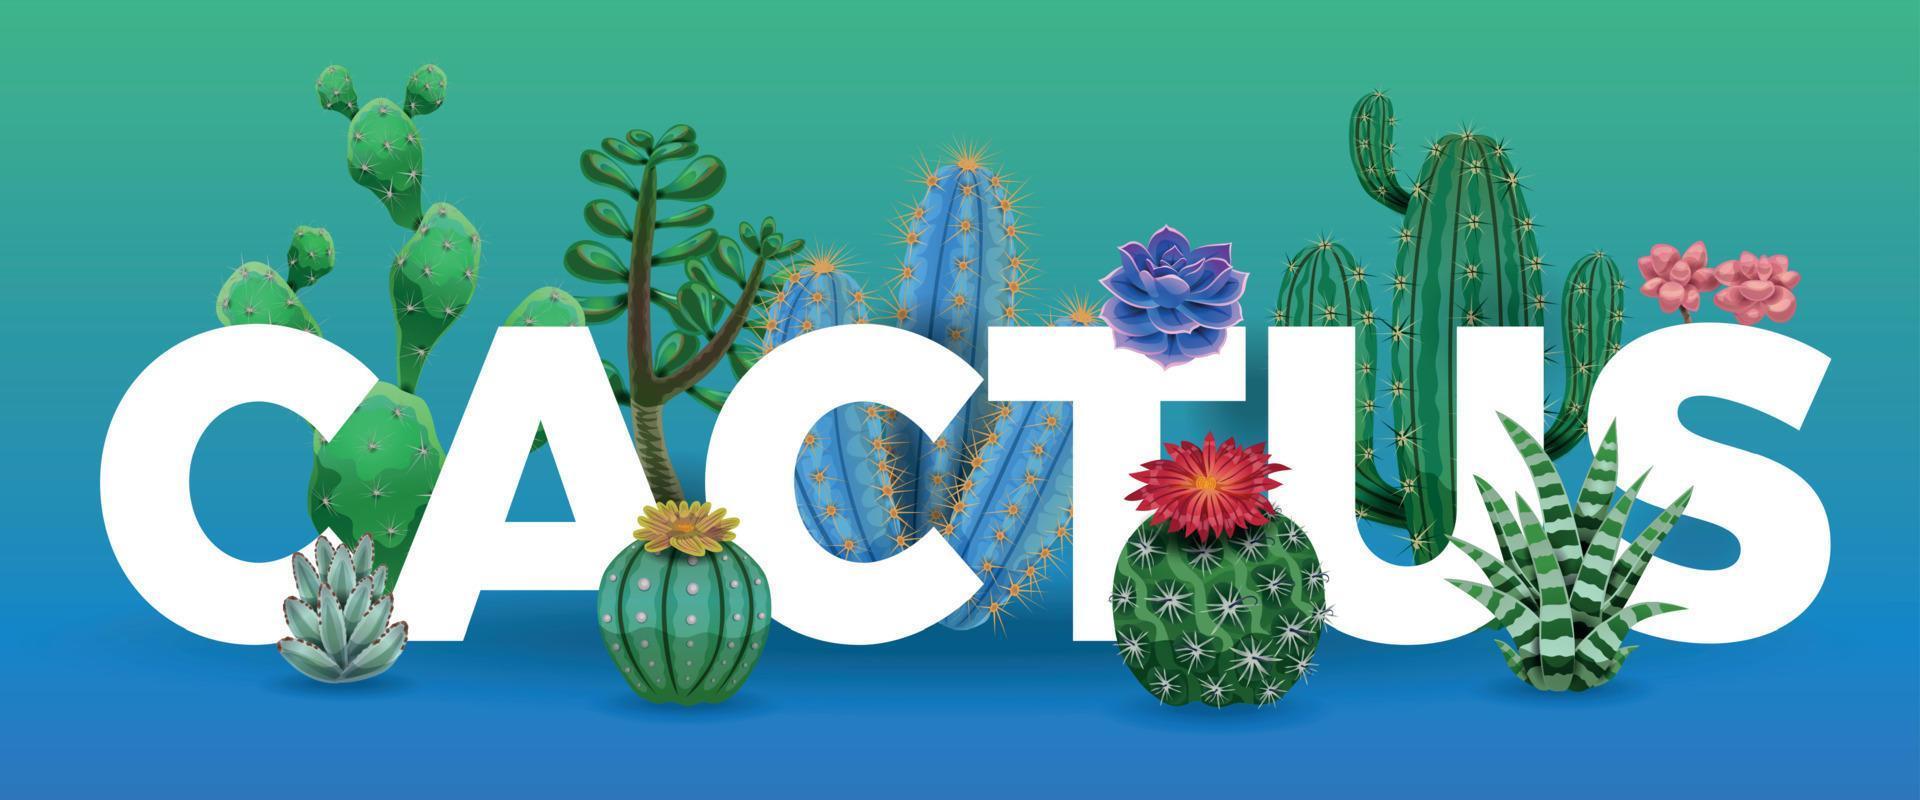 composition de grandes lettres de cactus vecteur